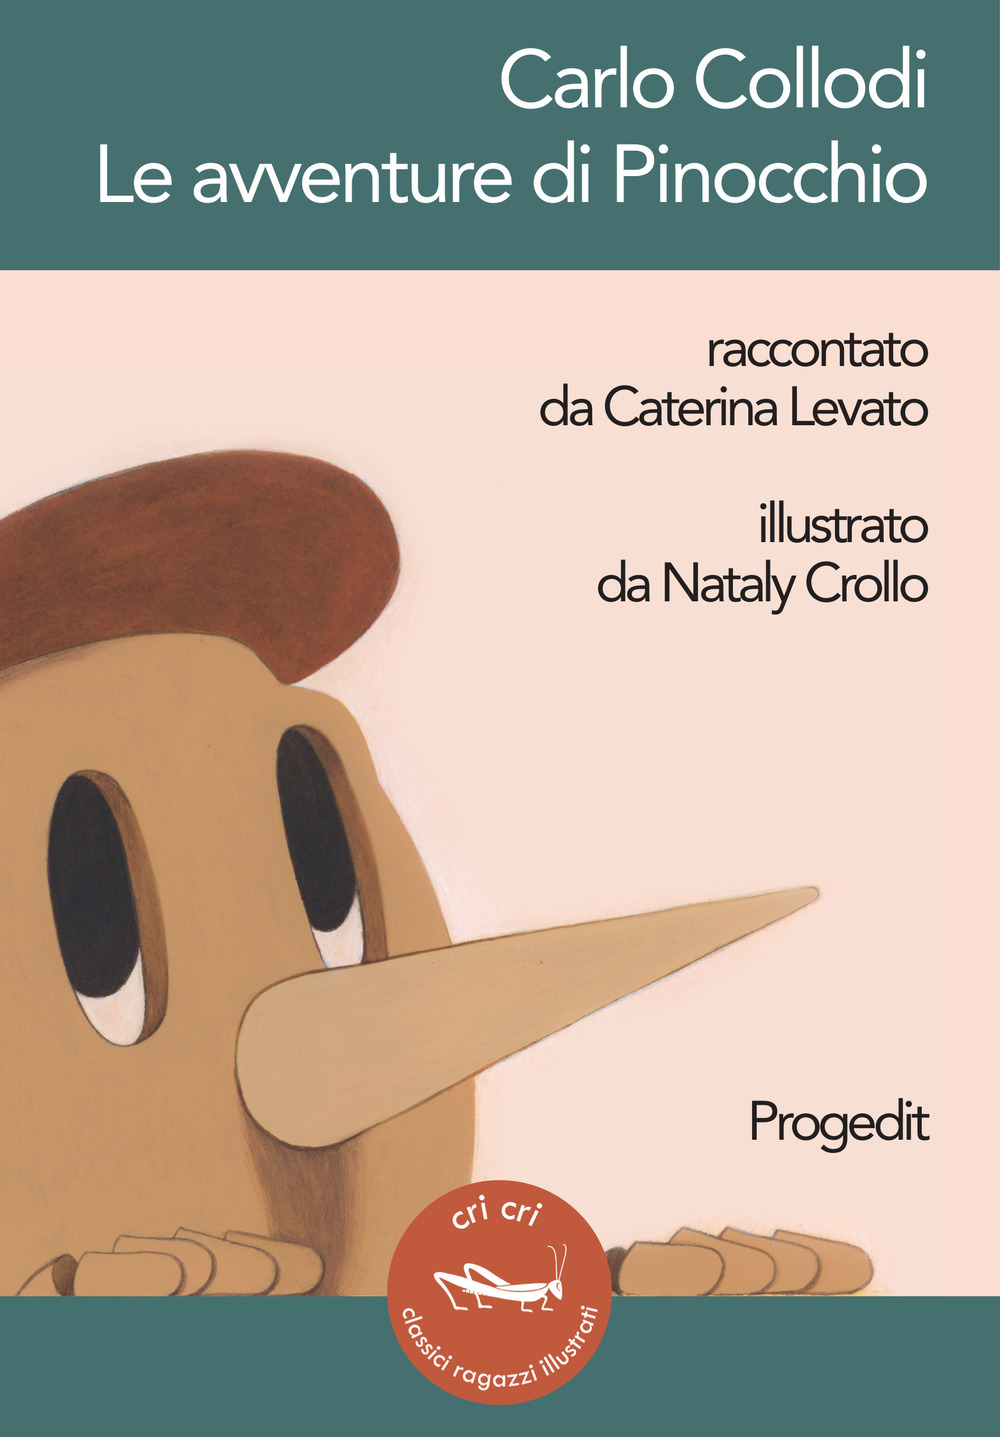 Image of Carlo Collodi. Le avventure di Pinocchio